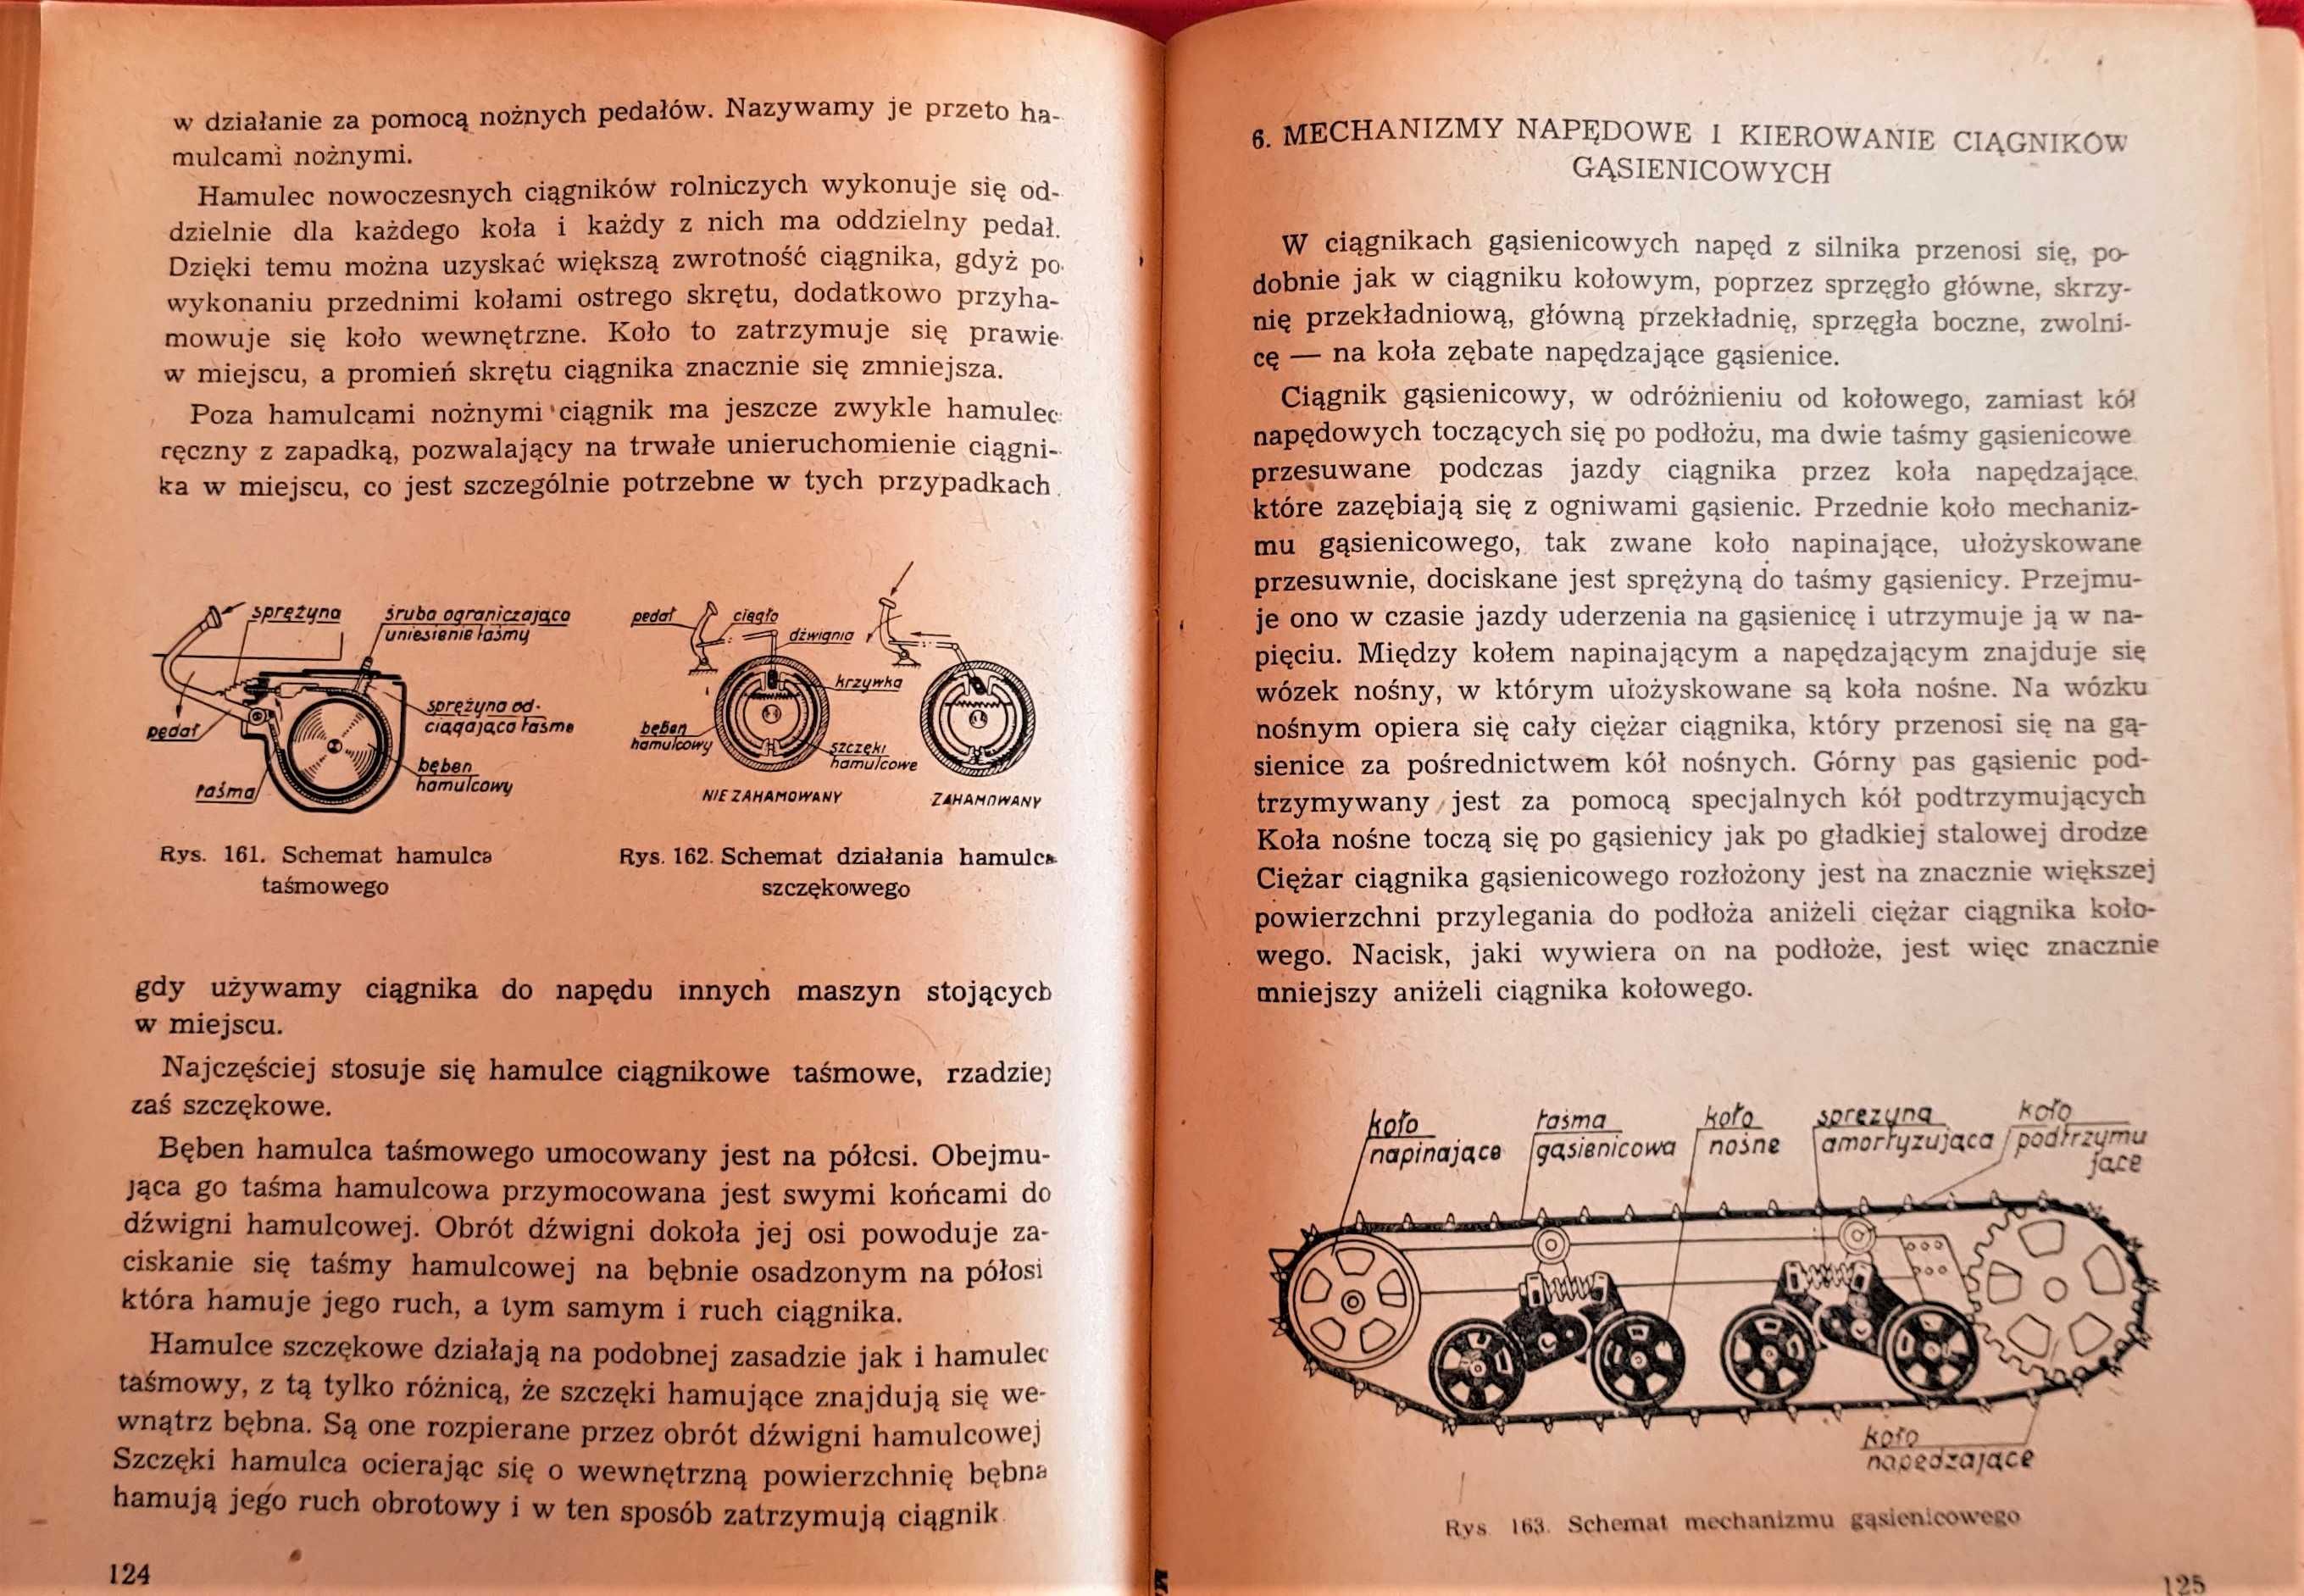 Poznajemy ciągniki rolnicze - książka dla hobbysty, Ursus C-45